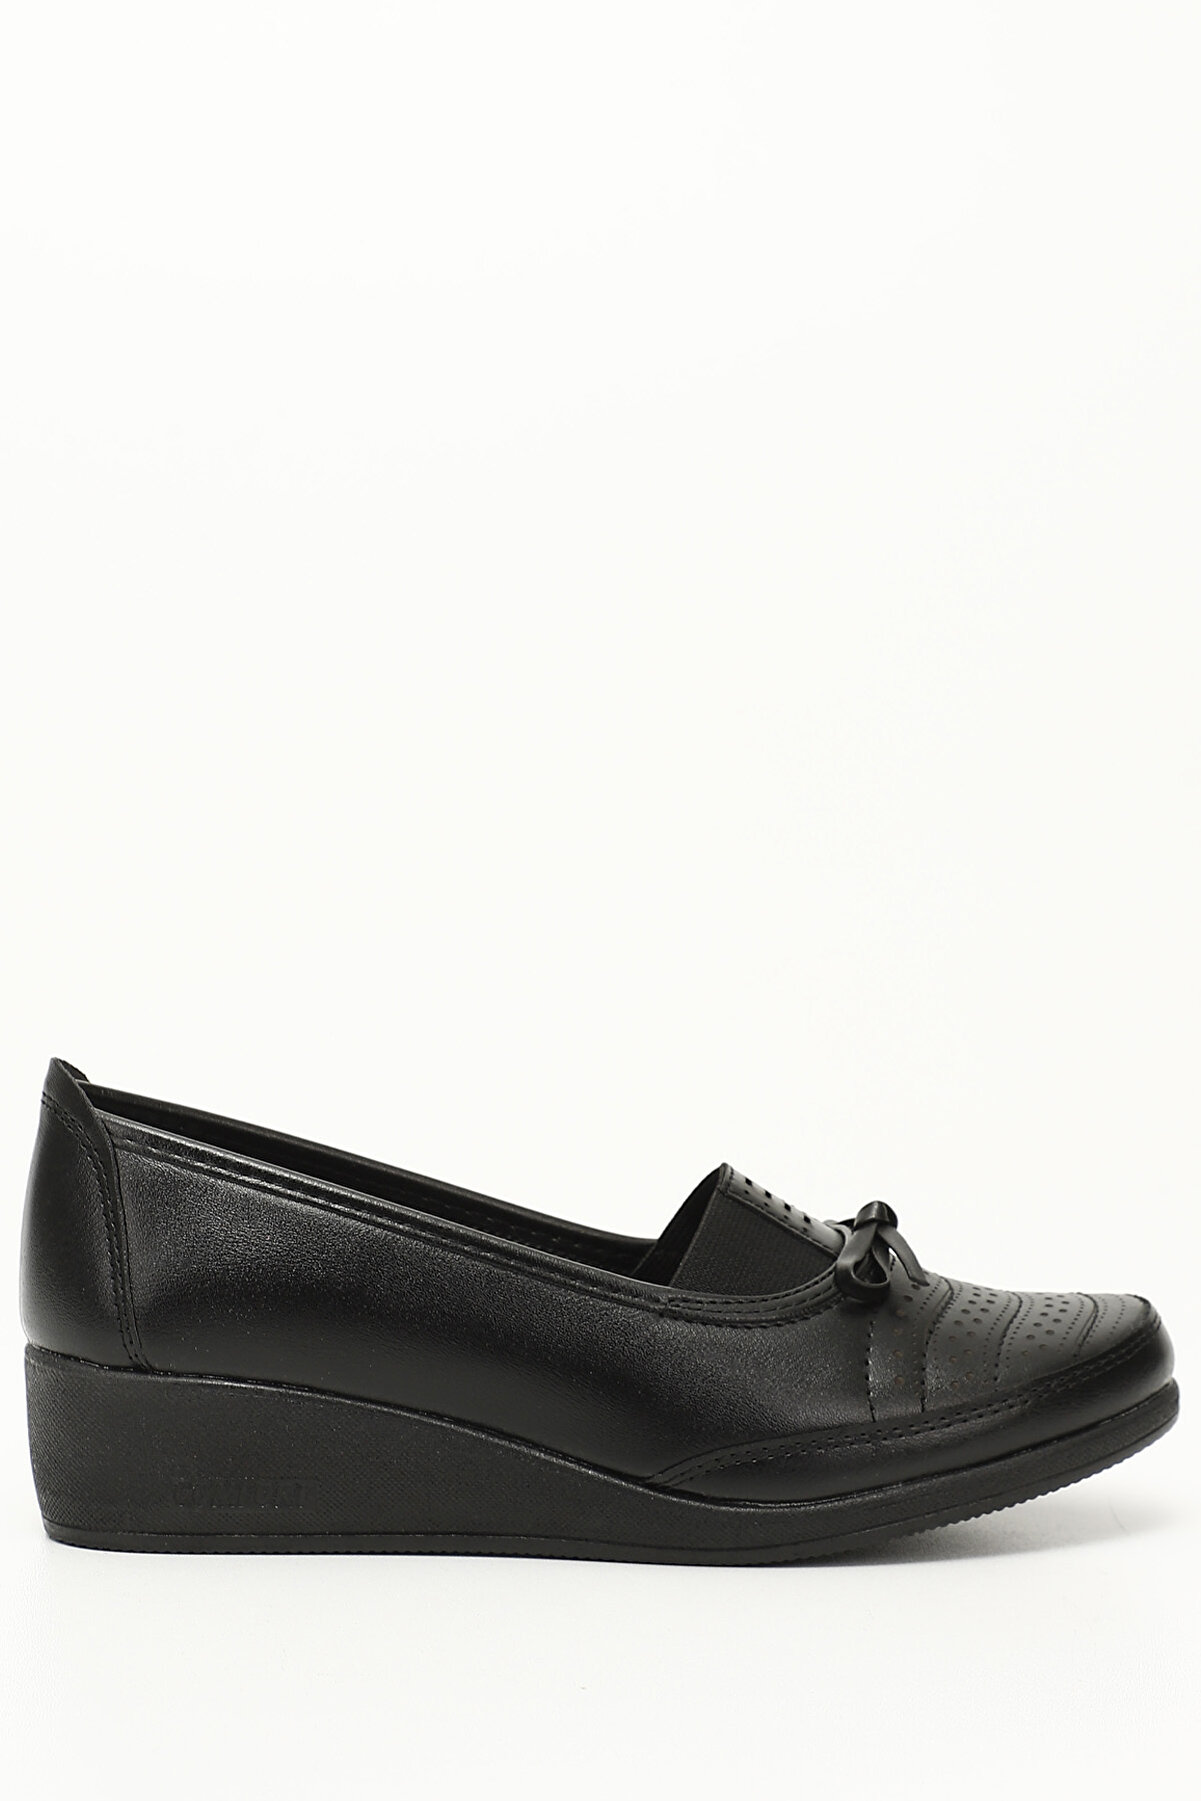 GÖNDERİ(R) Siyah Gön Yuvarlak Burun Dolgu Taban Fiyonklu Kadın Günlük Ayakkabı 42070